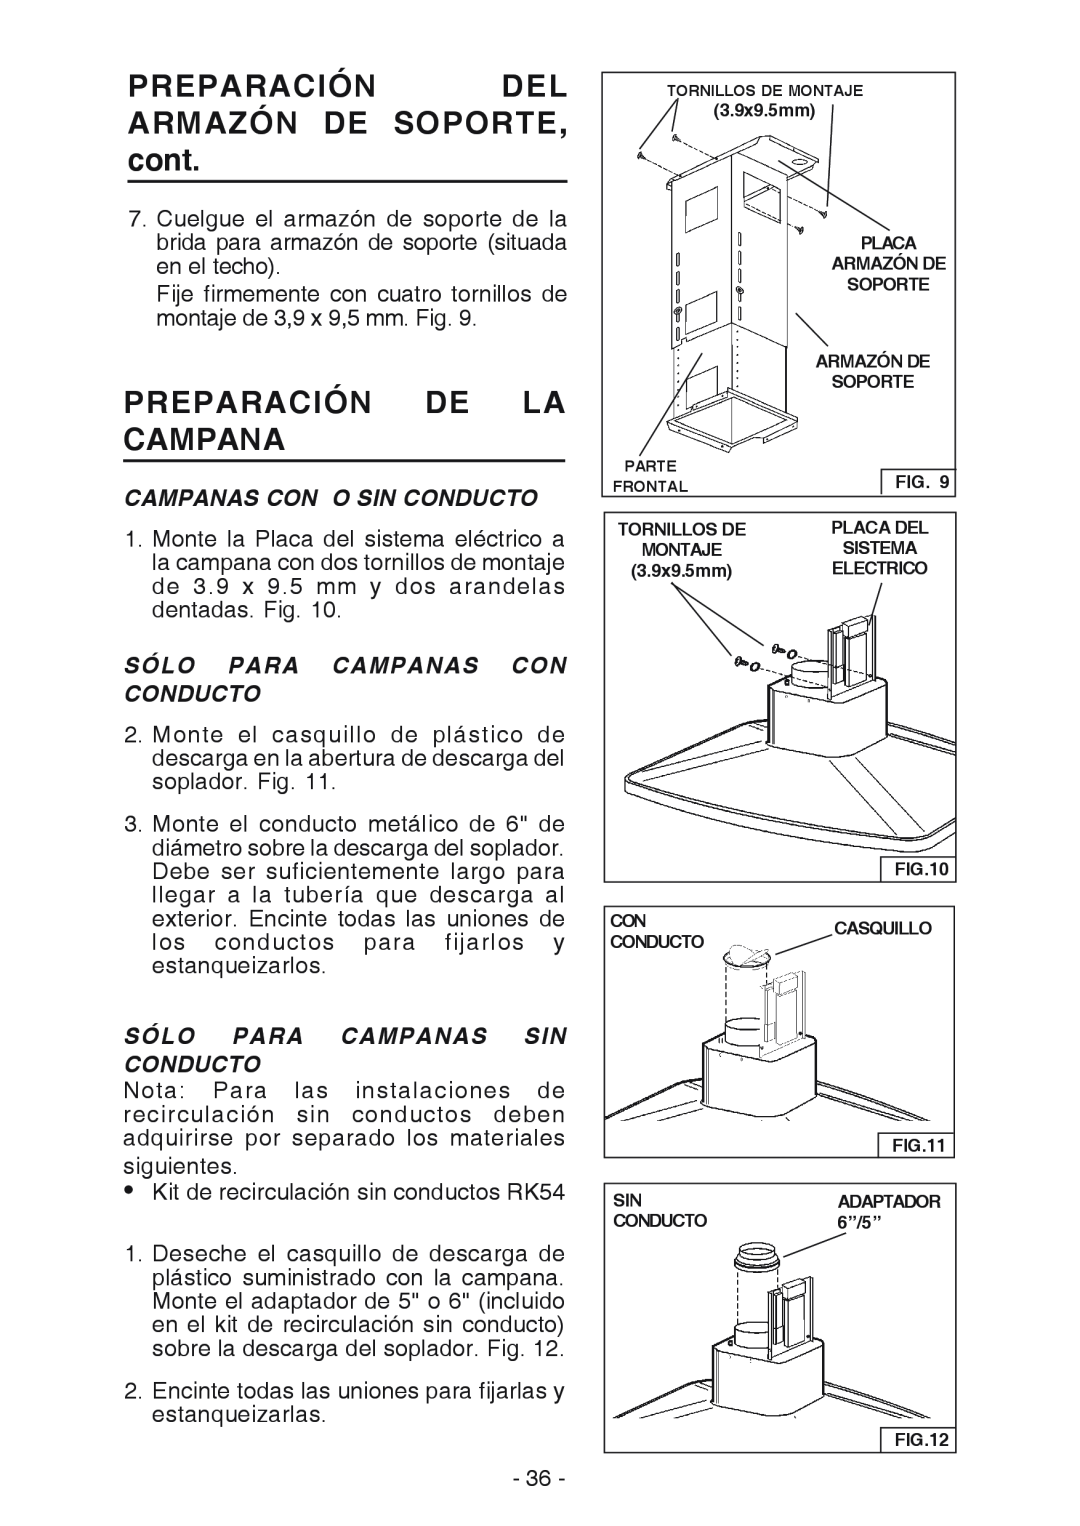 Broan E54000 manual PREPARACIÓN DEL ARMAZÓN DE SOPORTE, cont, Preparación De La Campana, Campanas Con O Sin Conducto 